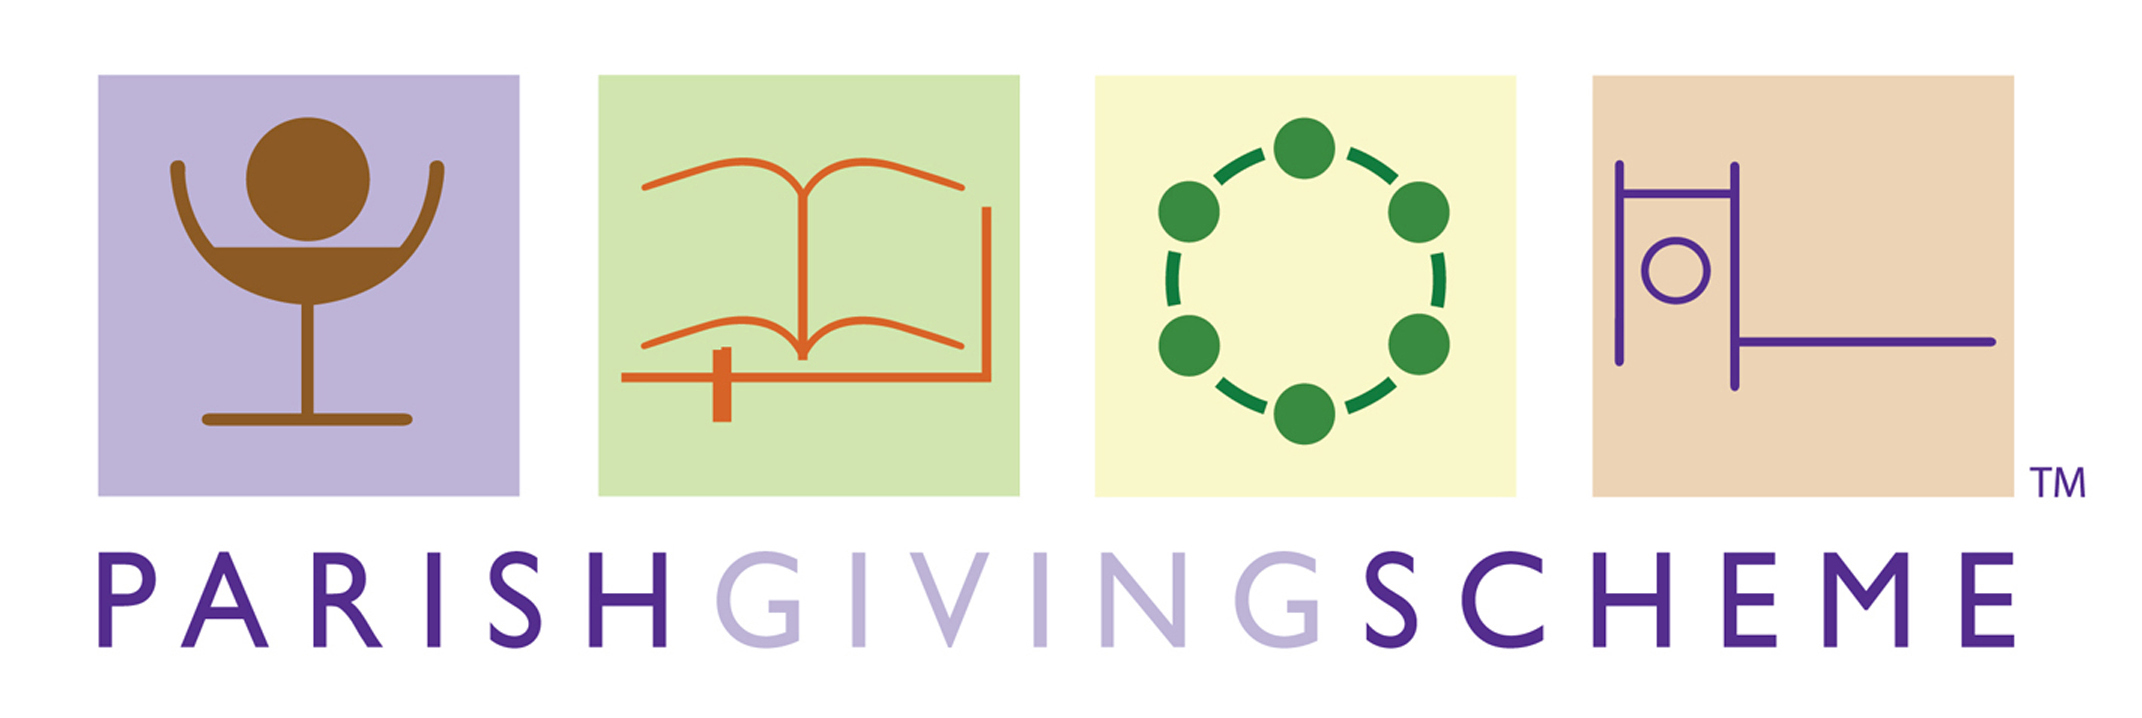 Parish Giving scheme logo